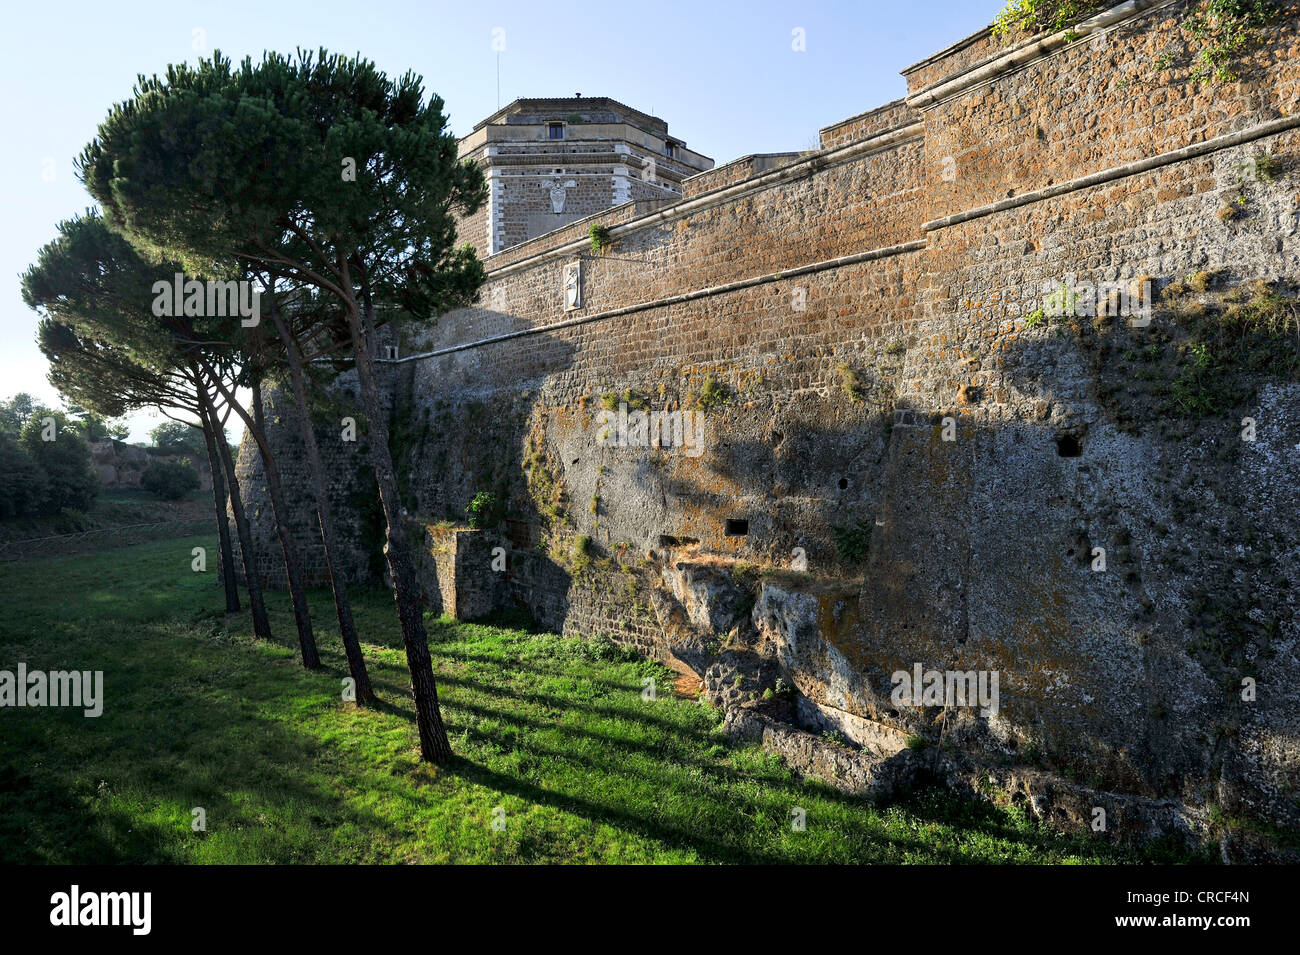 Castle with battlements, Forte Sangallo or Rocca dei Borgia, 16th century, Civita Castellana, Lazio, Italy, Europe Stock Photo